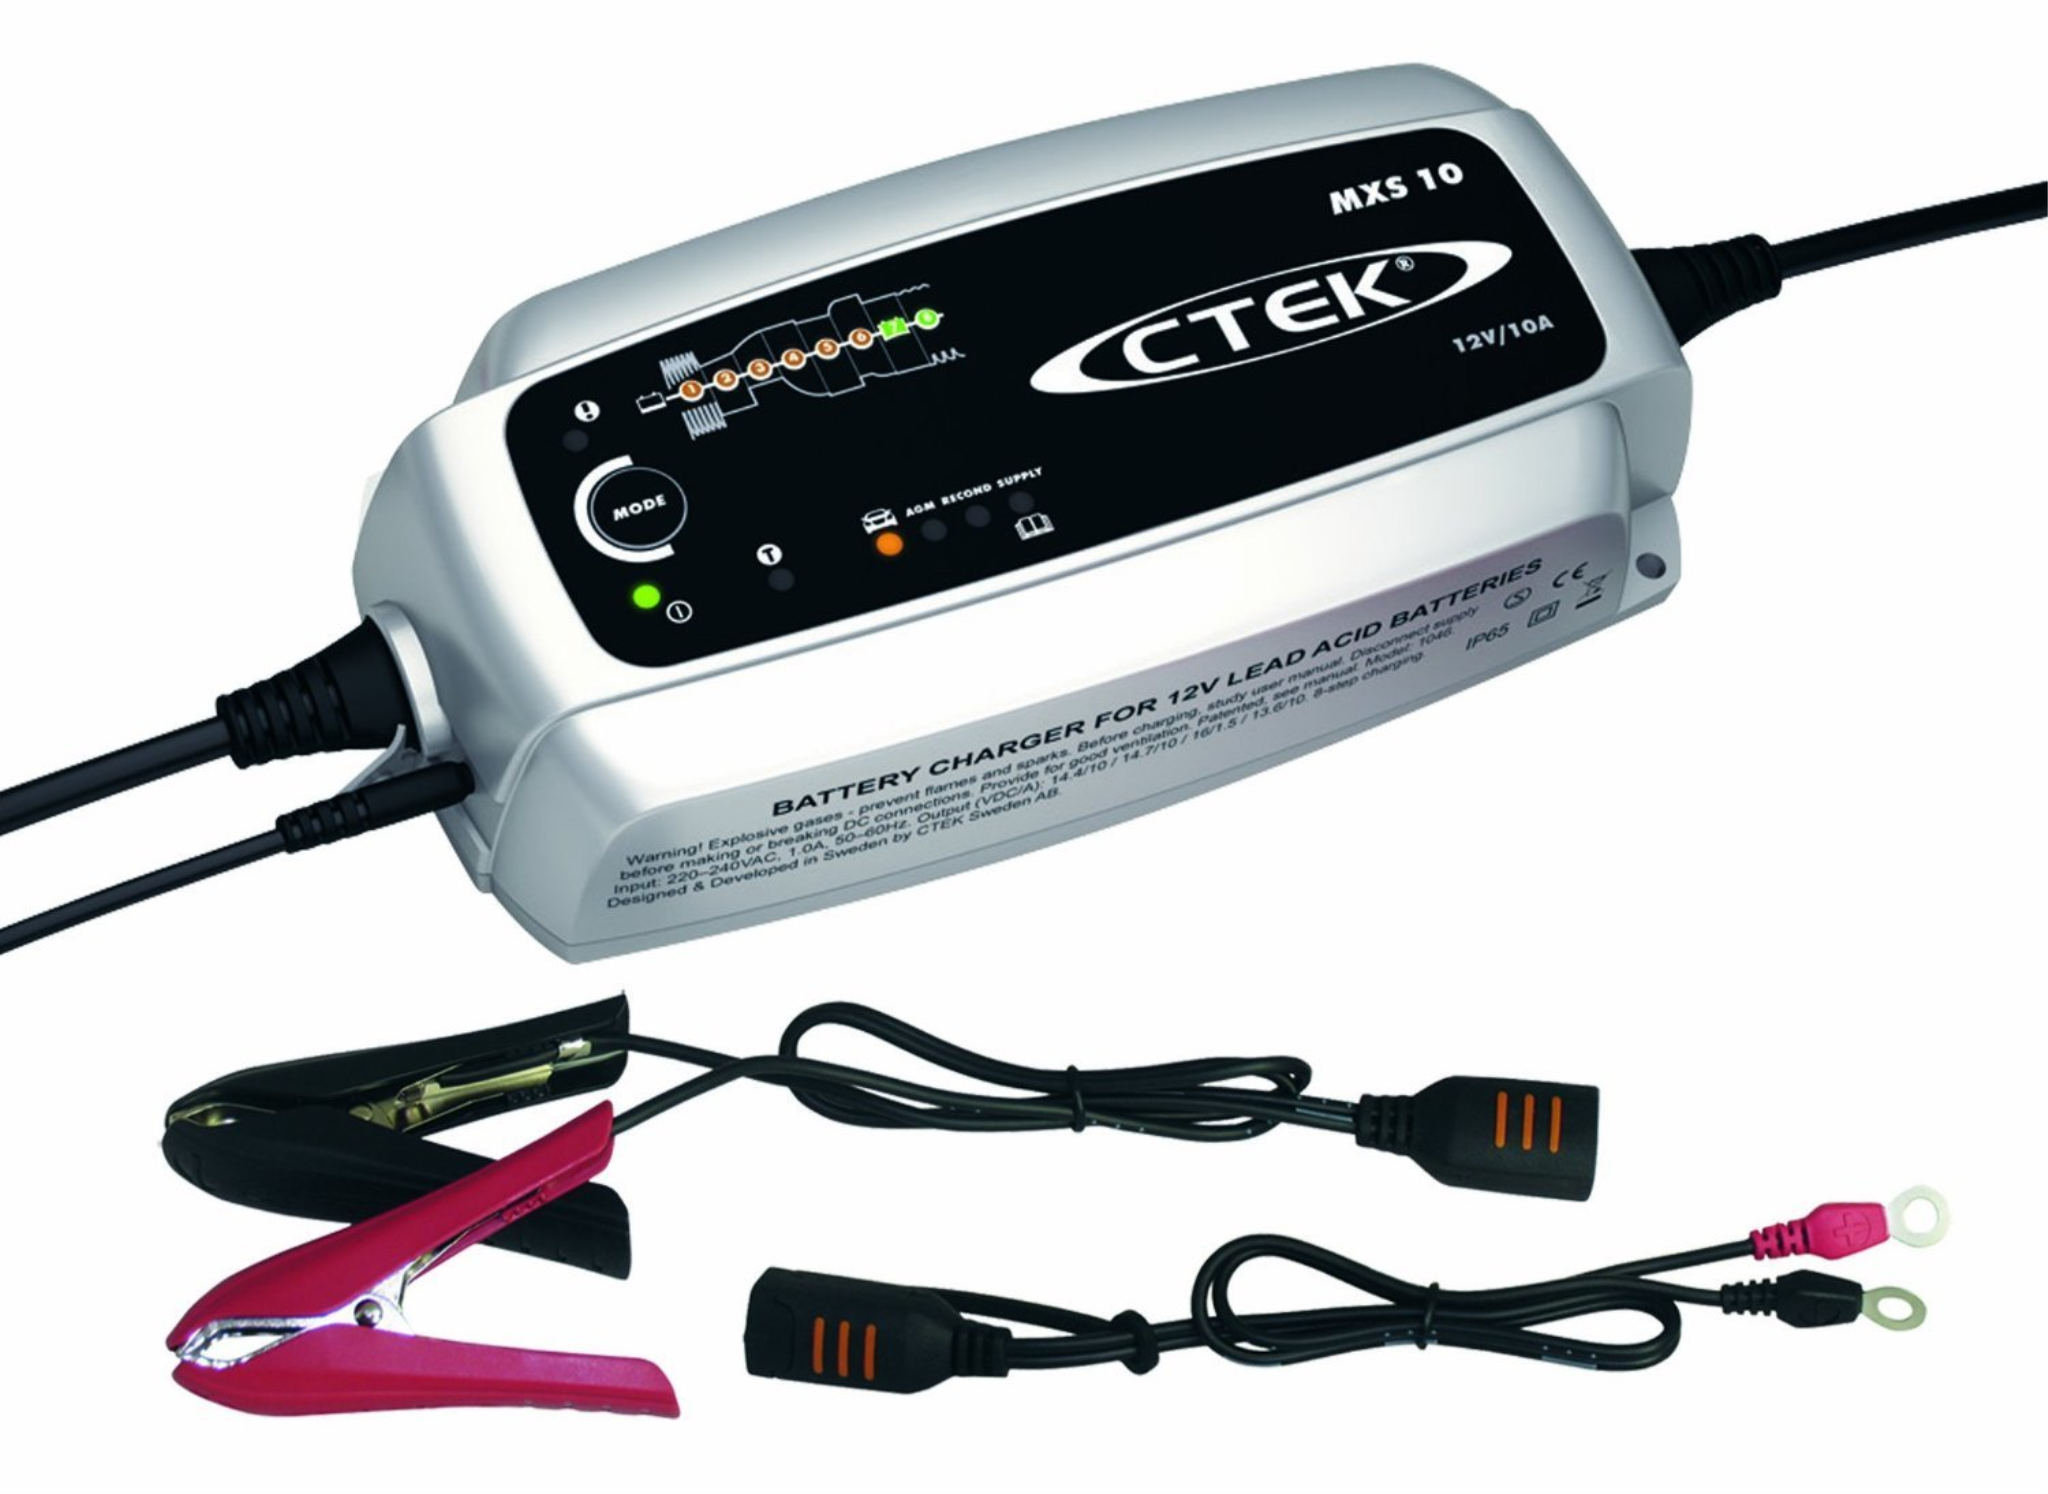 Battery Charger Ctek MXS 10 - 12V - 10A